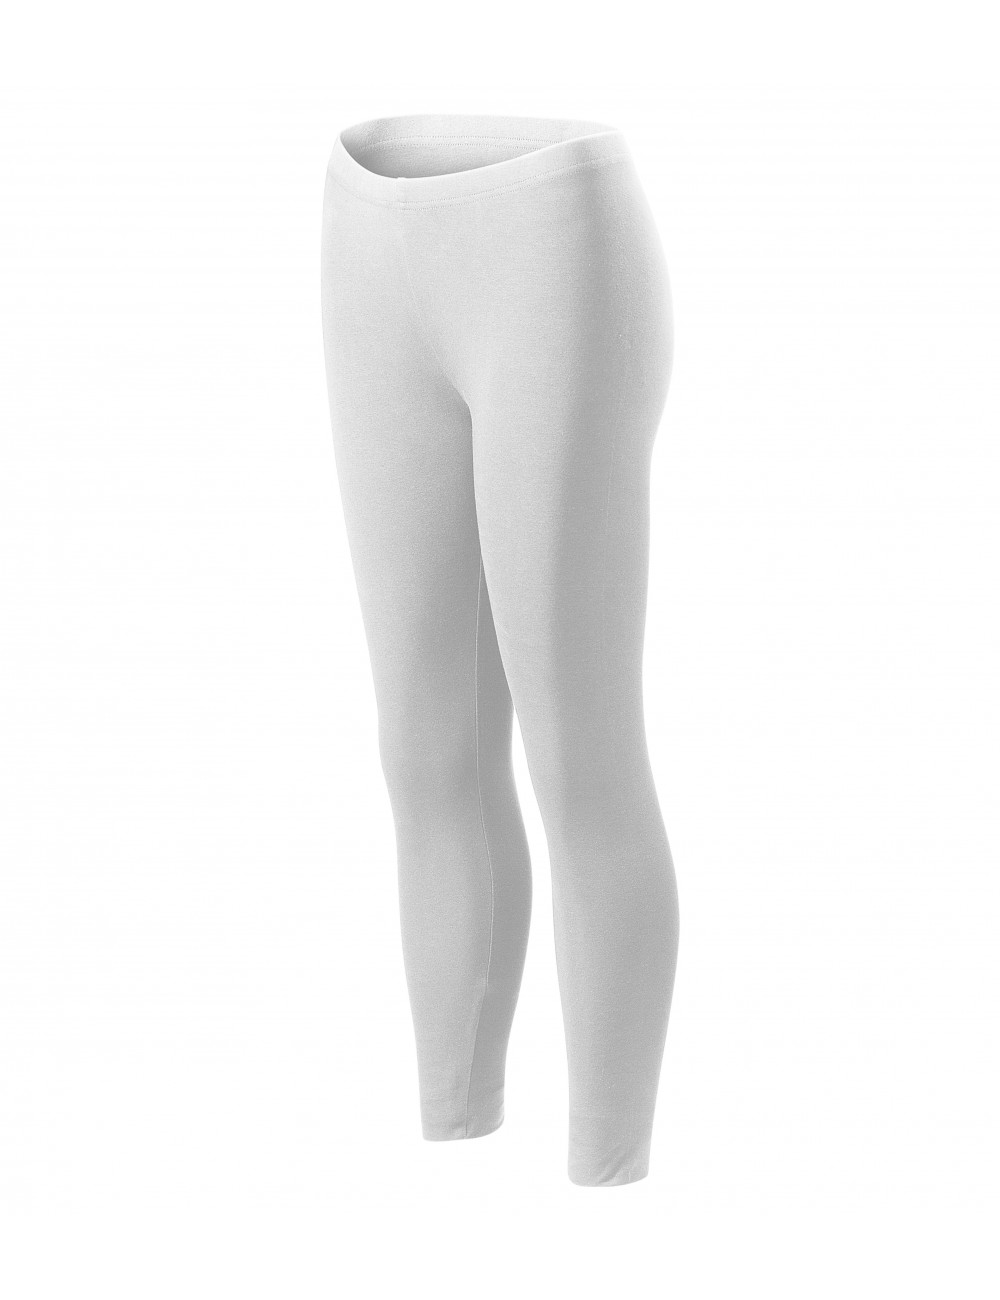 Women`s leggings balance 610 white Adler Malfini